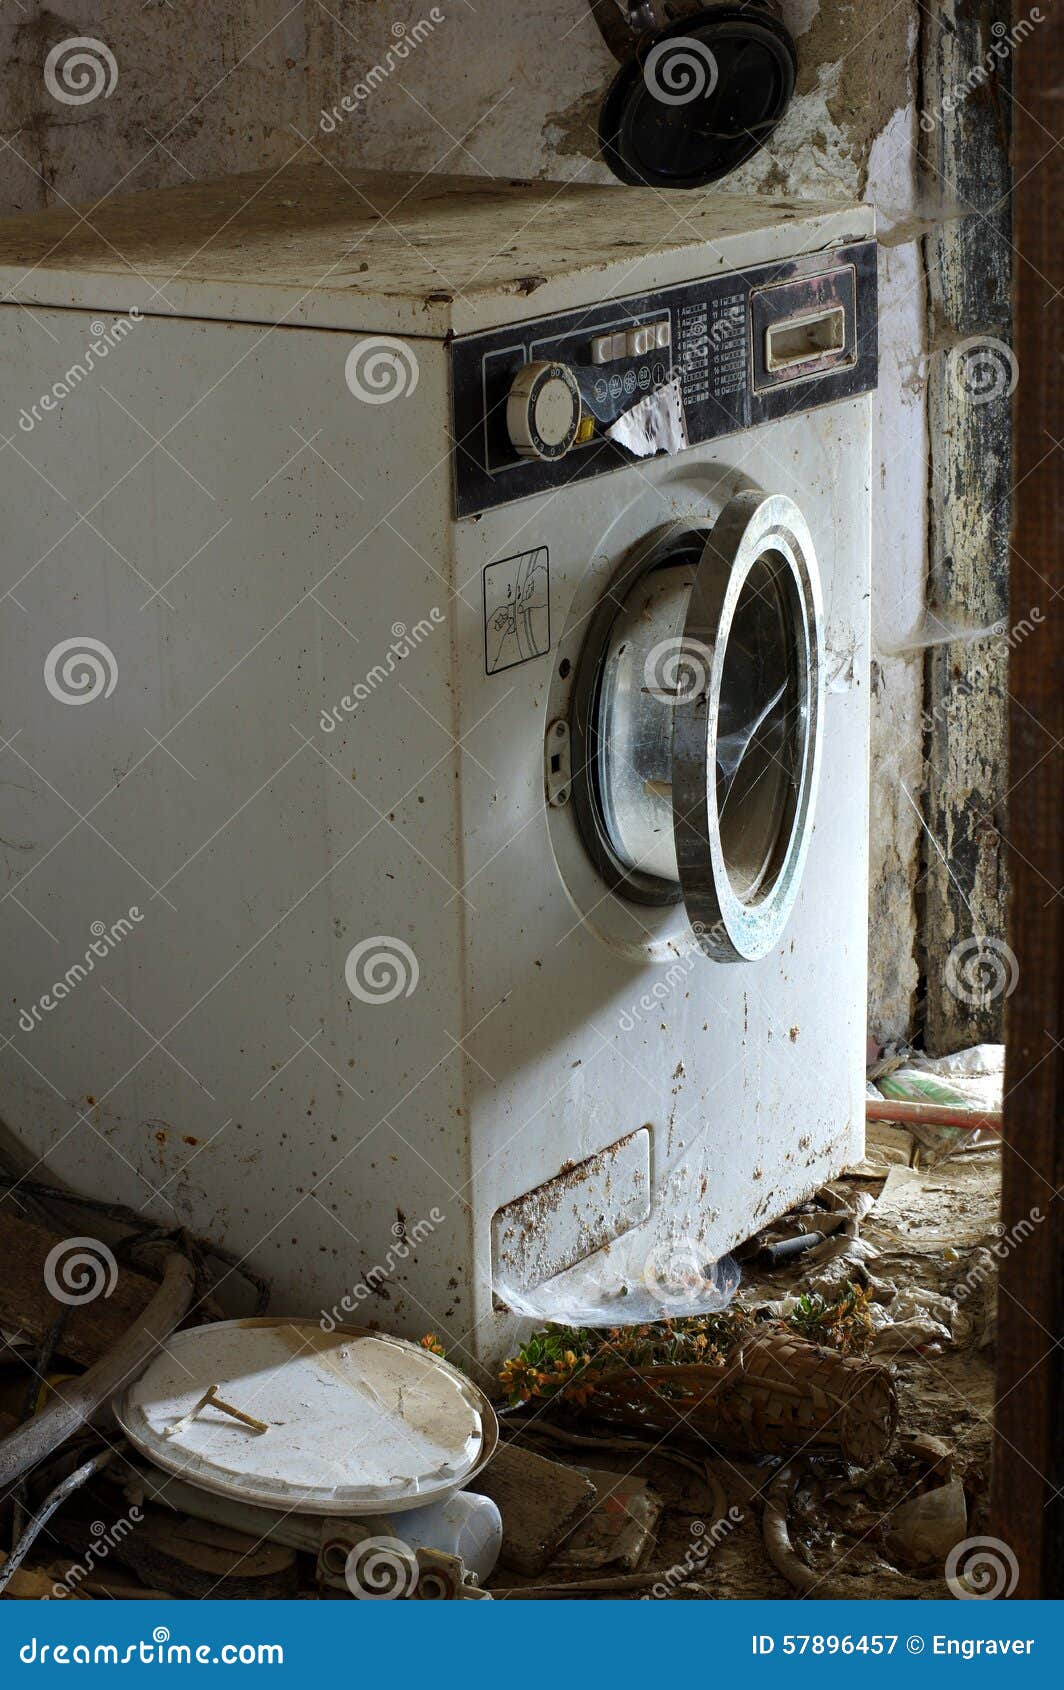 Разбивают стиральную машину. Сломанная стиральная машина. Поломанная стиральная машинка. Старая стиральная машина. Старая сломанная стиральная машина.